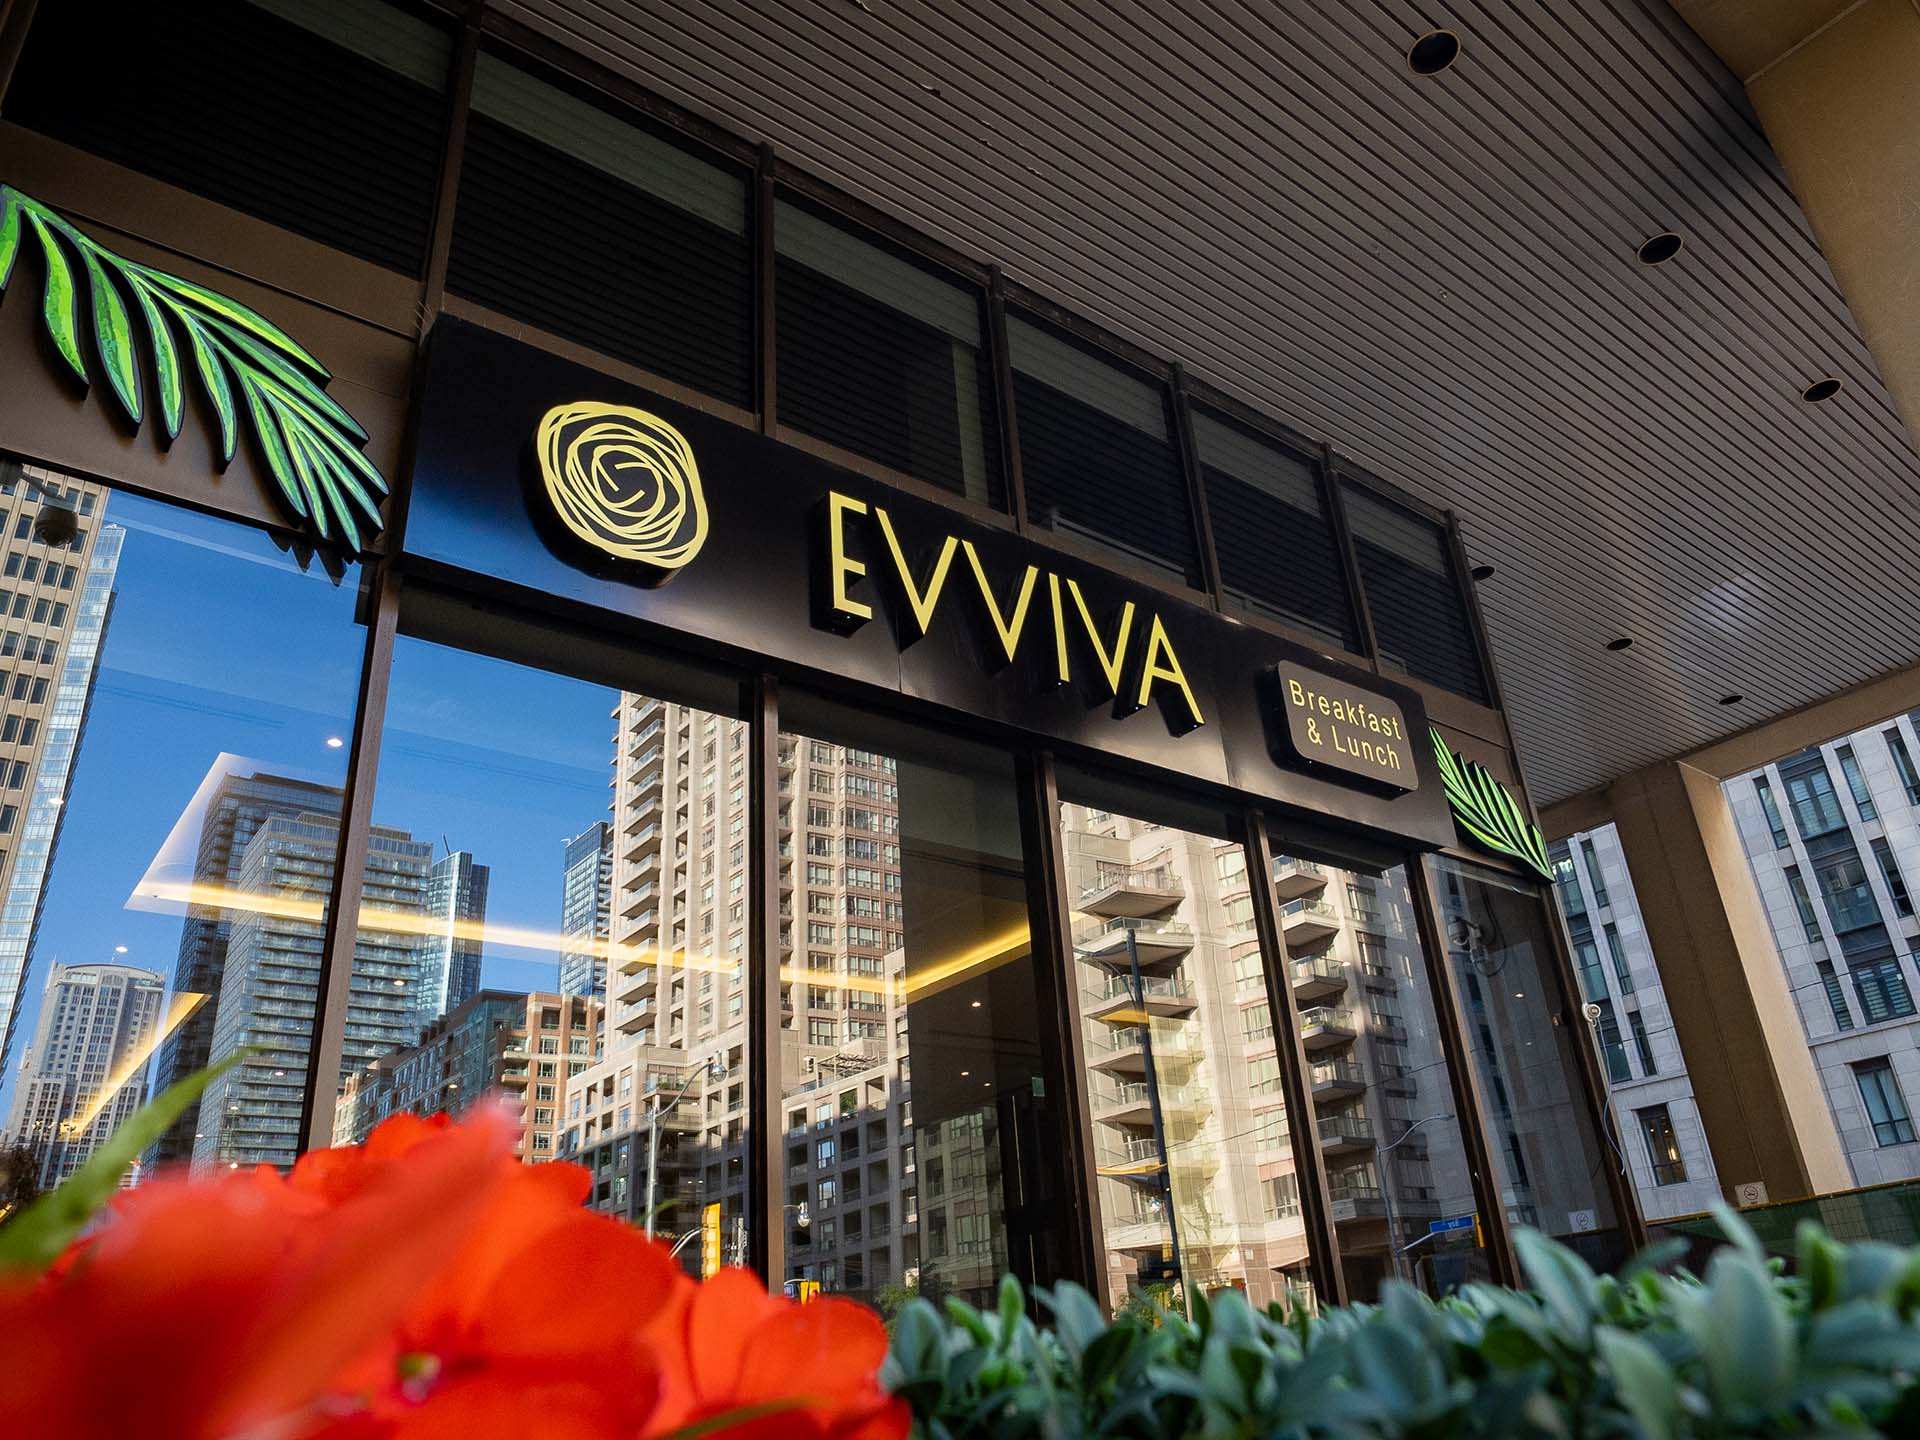 The best brunch in Toronto | The black sign for Evviva